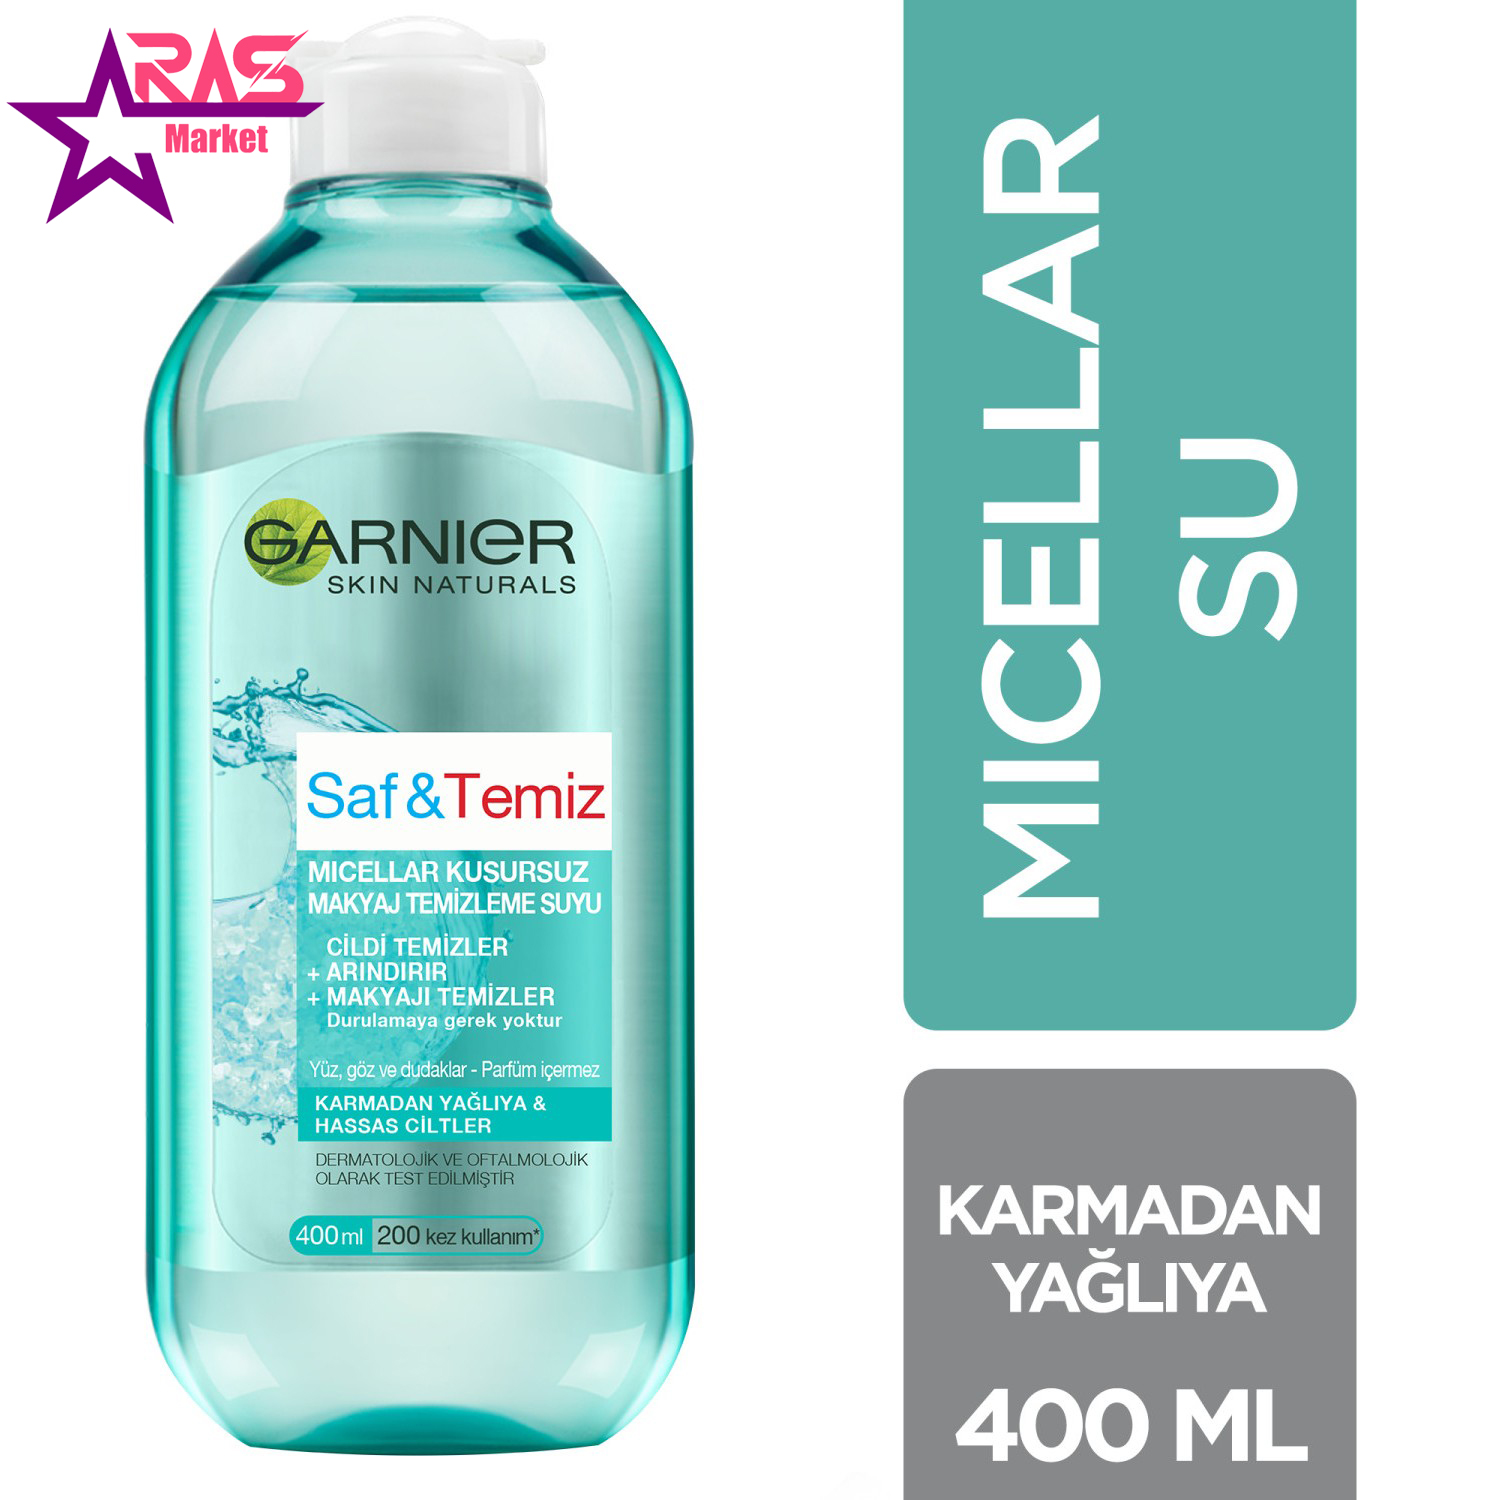 محلول آرایش پاک کن گارنیر مدل Saf & Temiz حجم 400 میلی لیتر ، فروشگاه اینترنتی ارس مارکت